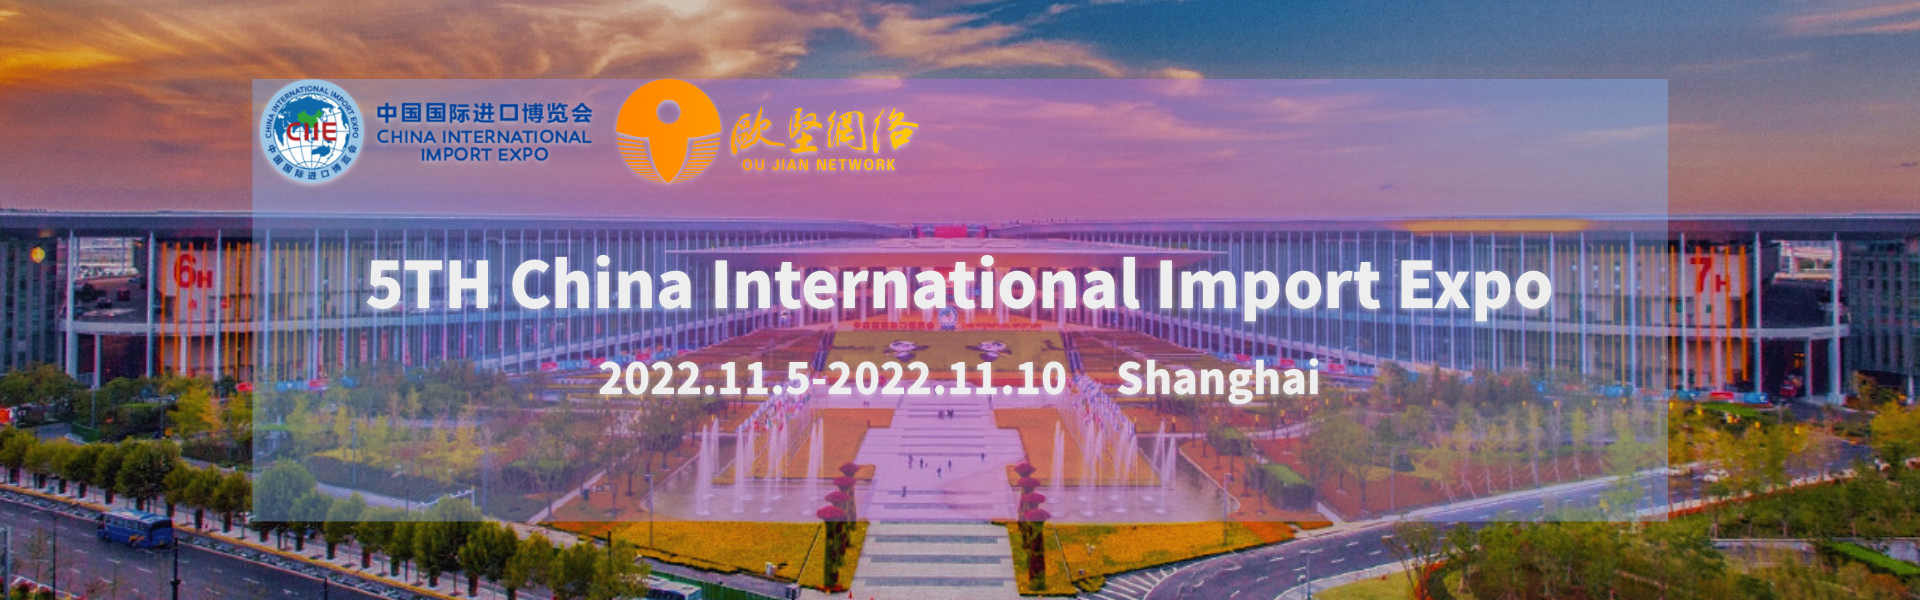 Hội chợ triển lãm nhập khẩu quốc tế Trung Quốc